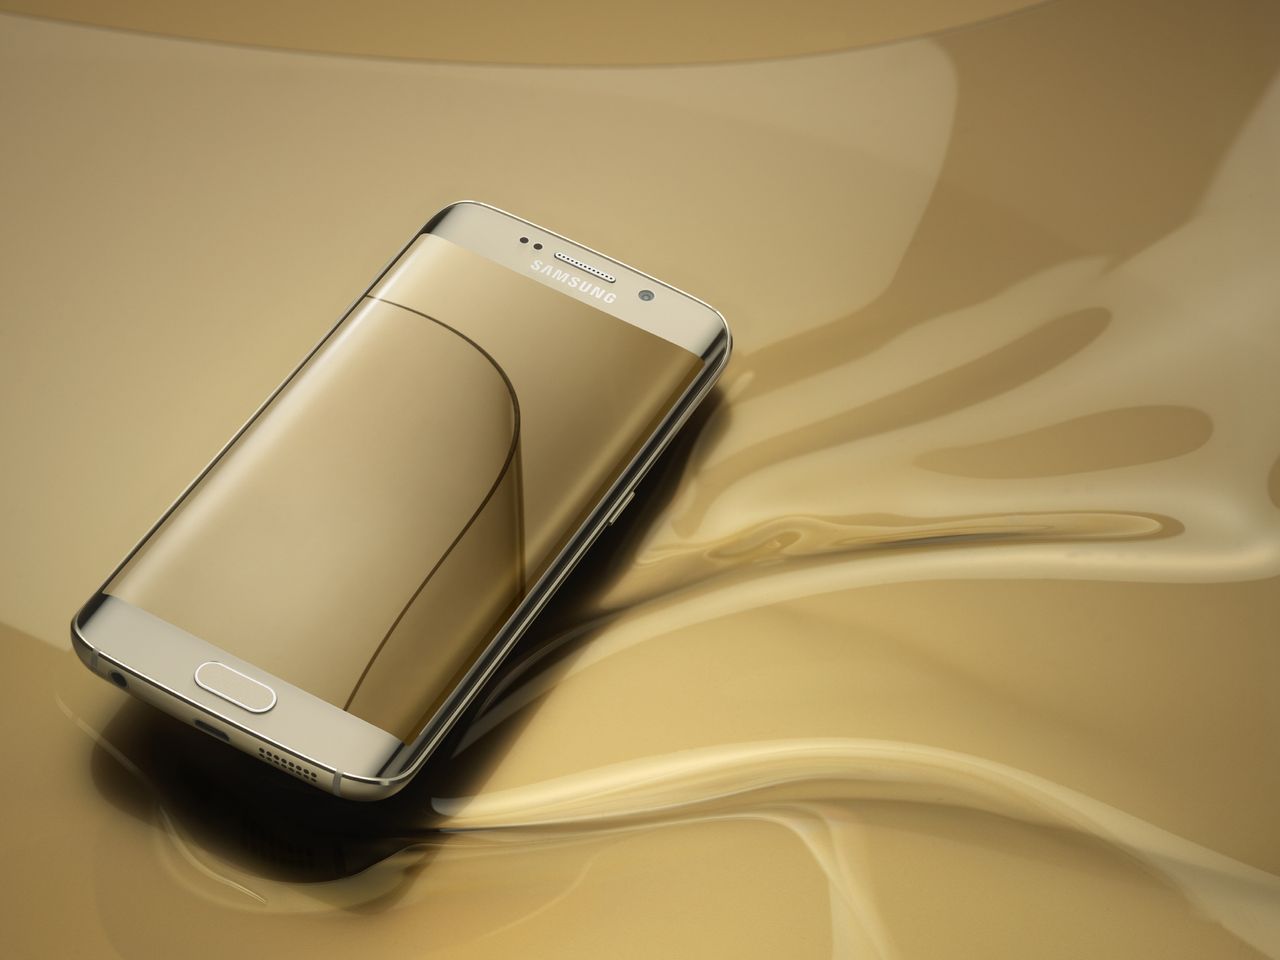 Korea Times: operatorzy zamówili 20 milionów Galaxy S6 i S6 edge